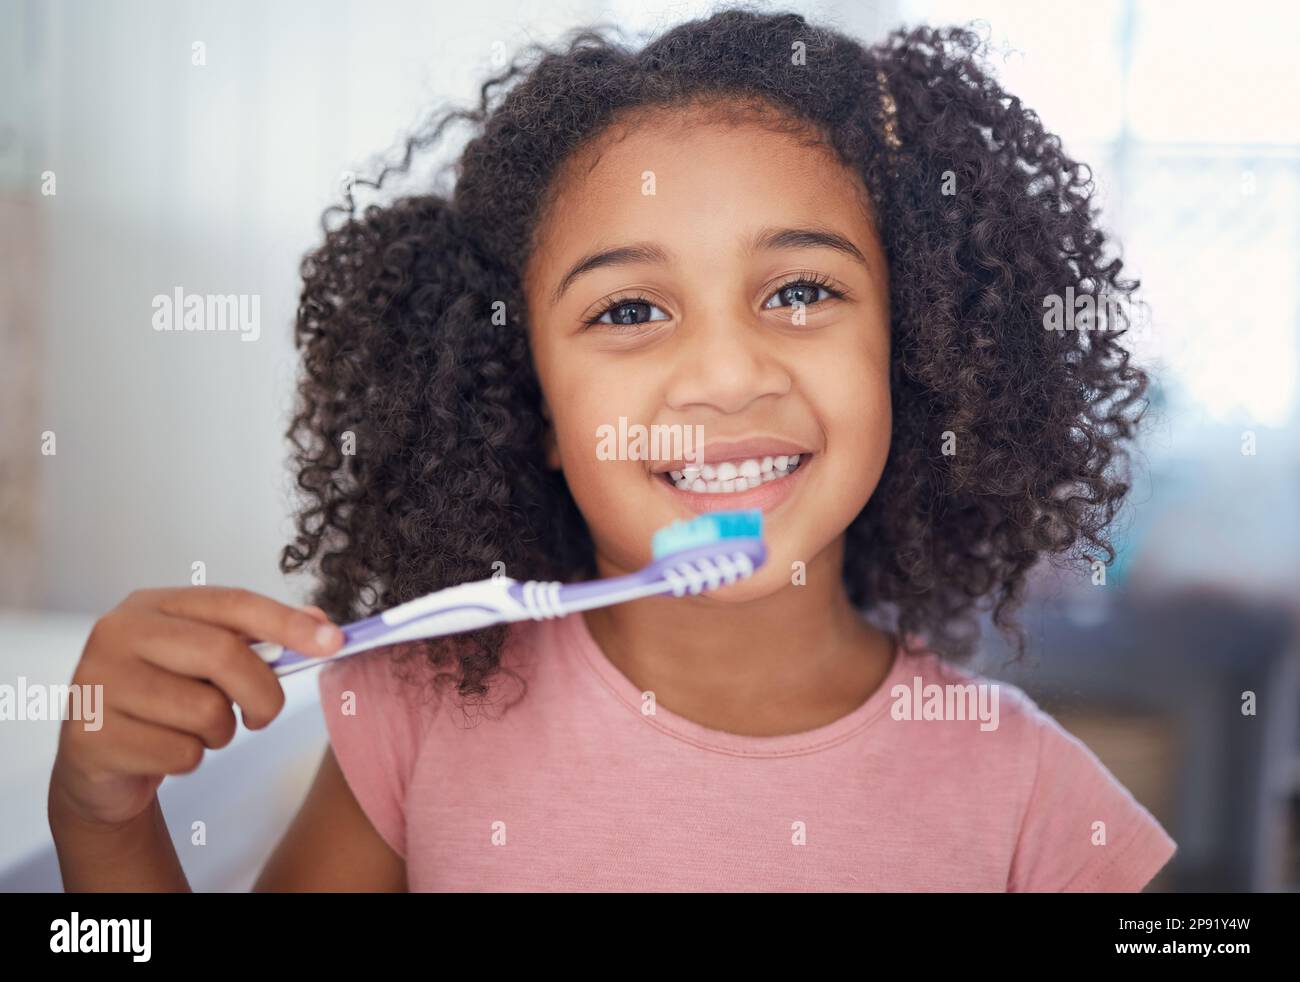 Junge Mädchen Kinder, Porträt-und Zähneputzen, Zahnpflege und Badezimmer  Zahnbürste in Brasilien zu Hause. Glücklich, lächeln und schwarzes Kind Gesicht  Reinigung Stockfotografie - Alamy